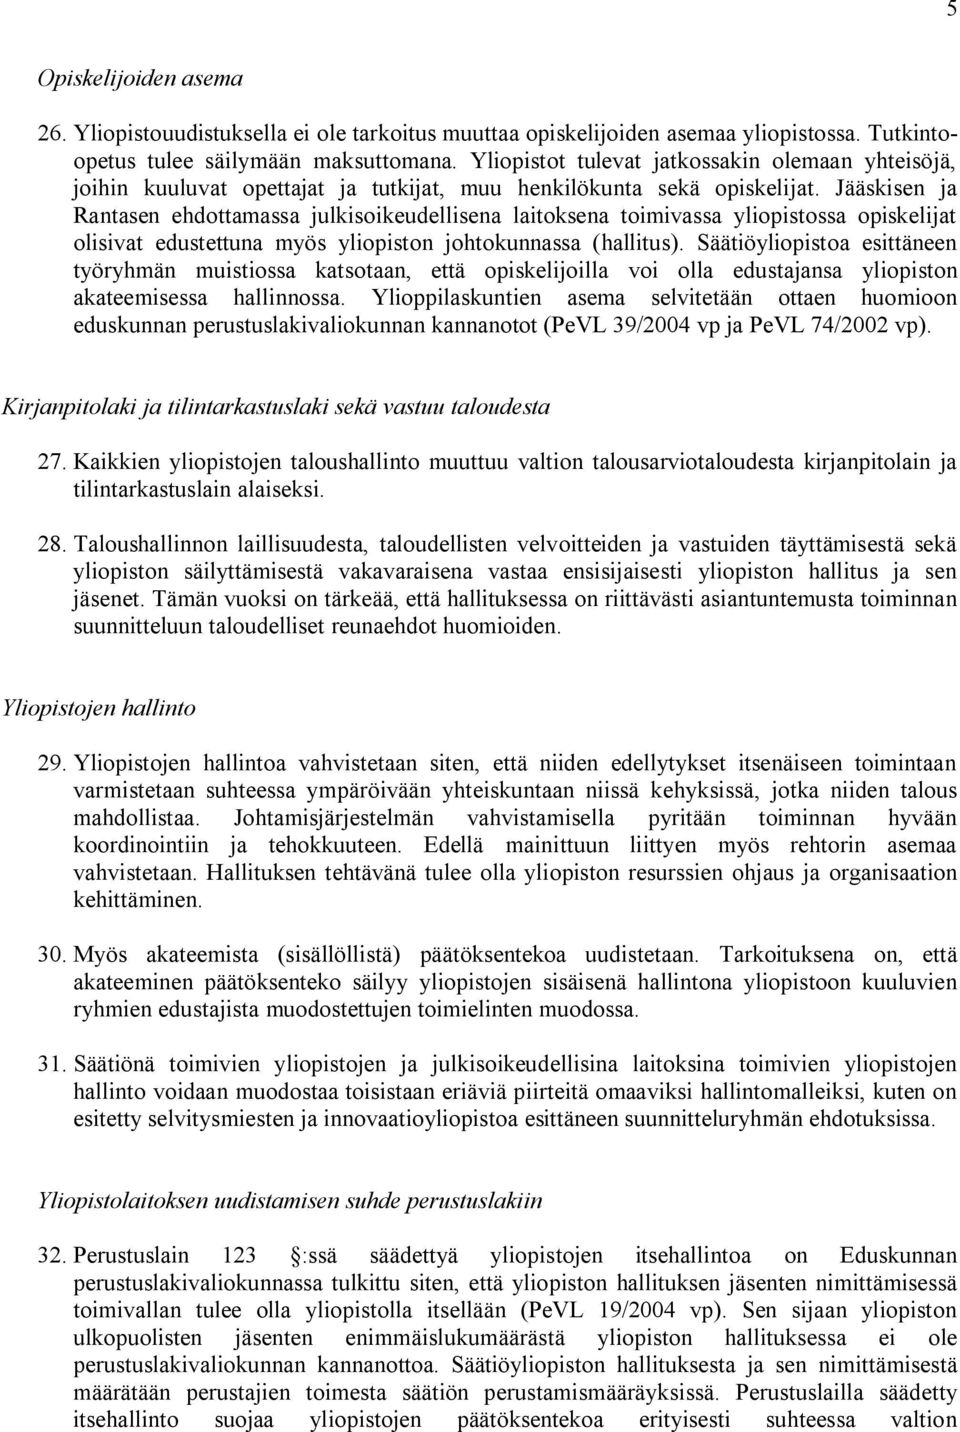 Jääskisen ja Rantasen ehdottamassa julkisoikeudellisena laitoksena toimivassa yliopistossa opiskelijat olisivat edustettuna myös yliopiston johtokunnassa (hallitus).